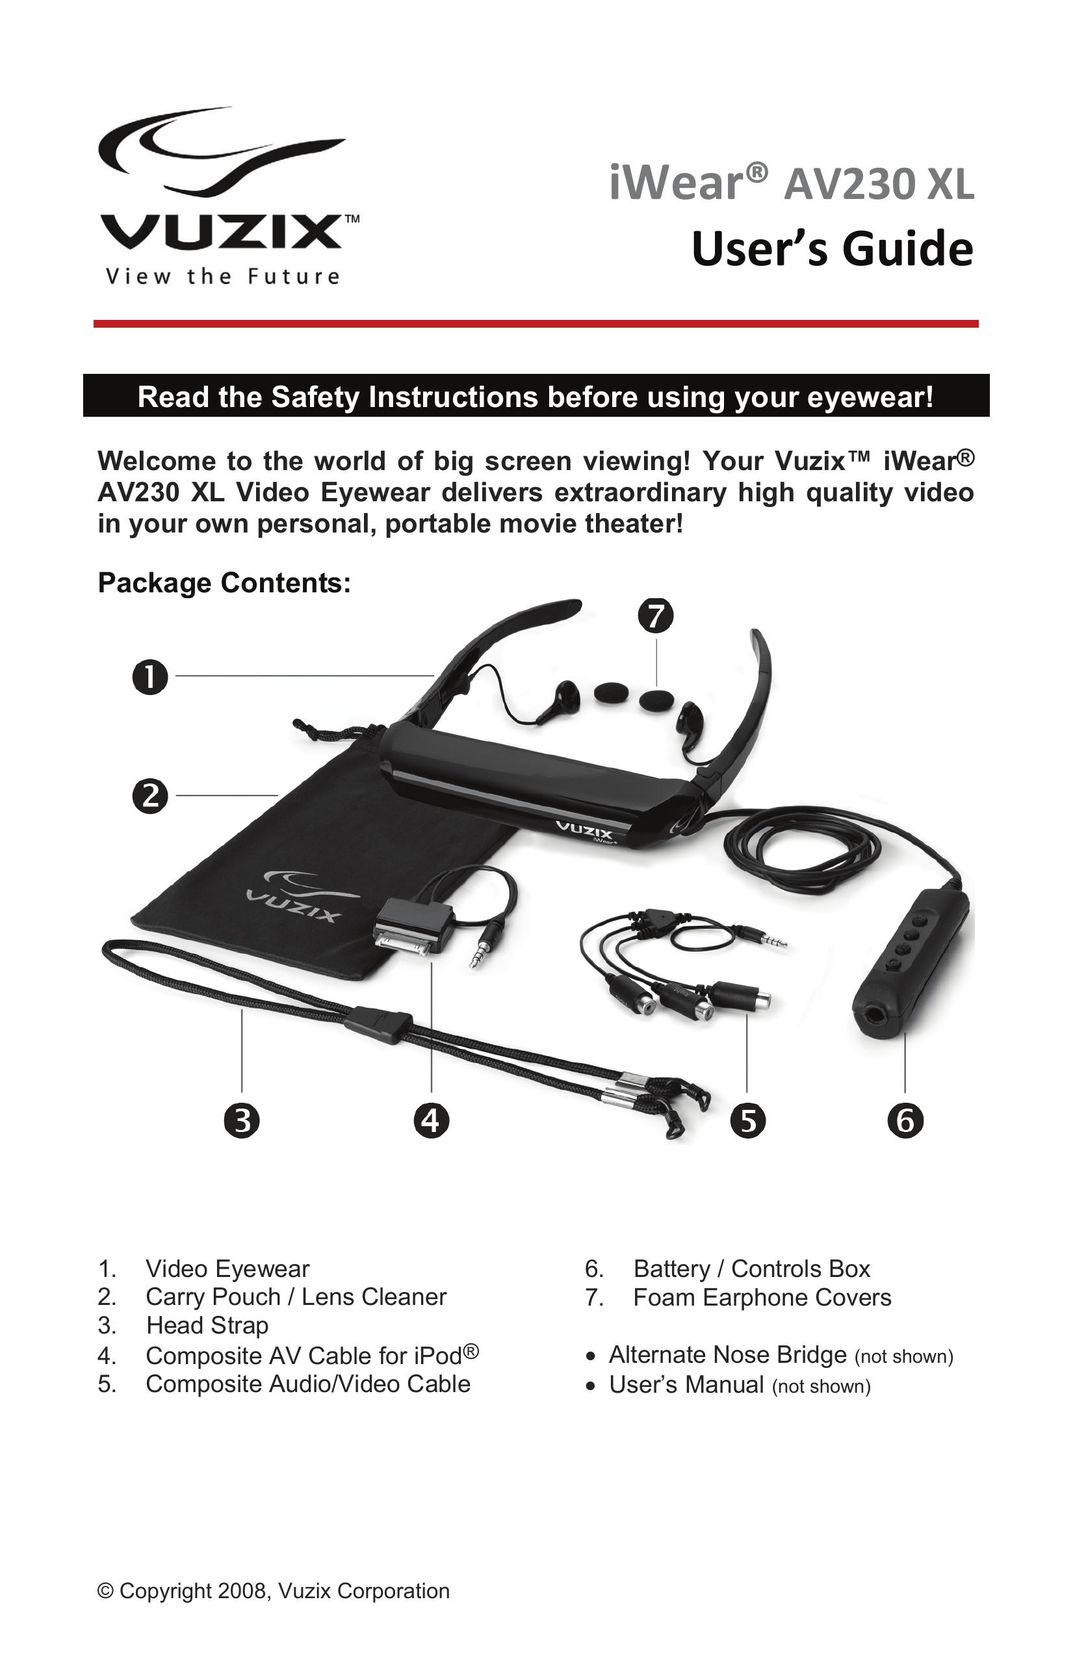 Vuzix AV230 XL Video Eyeware User Manual